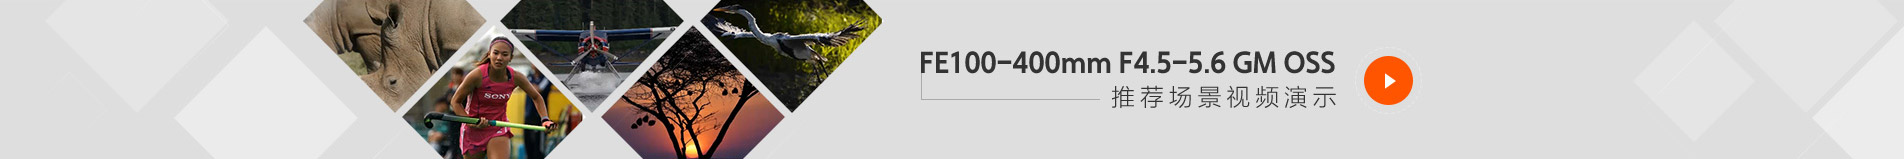 FE 100-400mm F4.5-5.6 GM OSS推荐场景视频演示